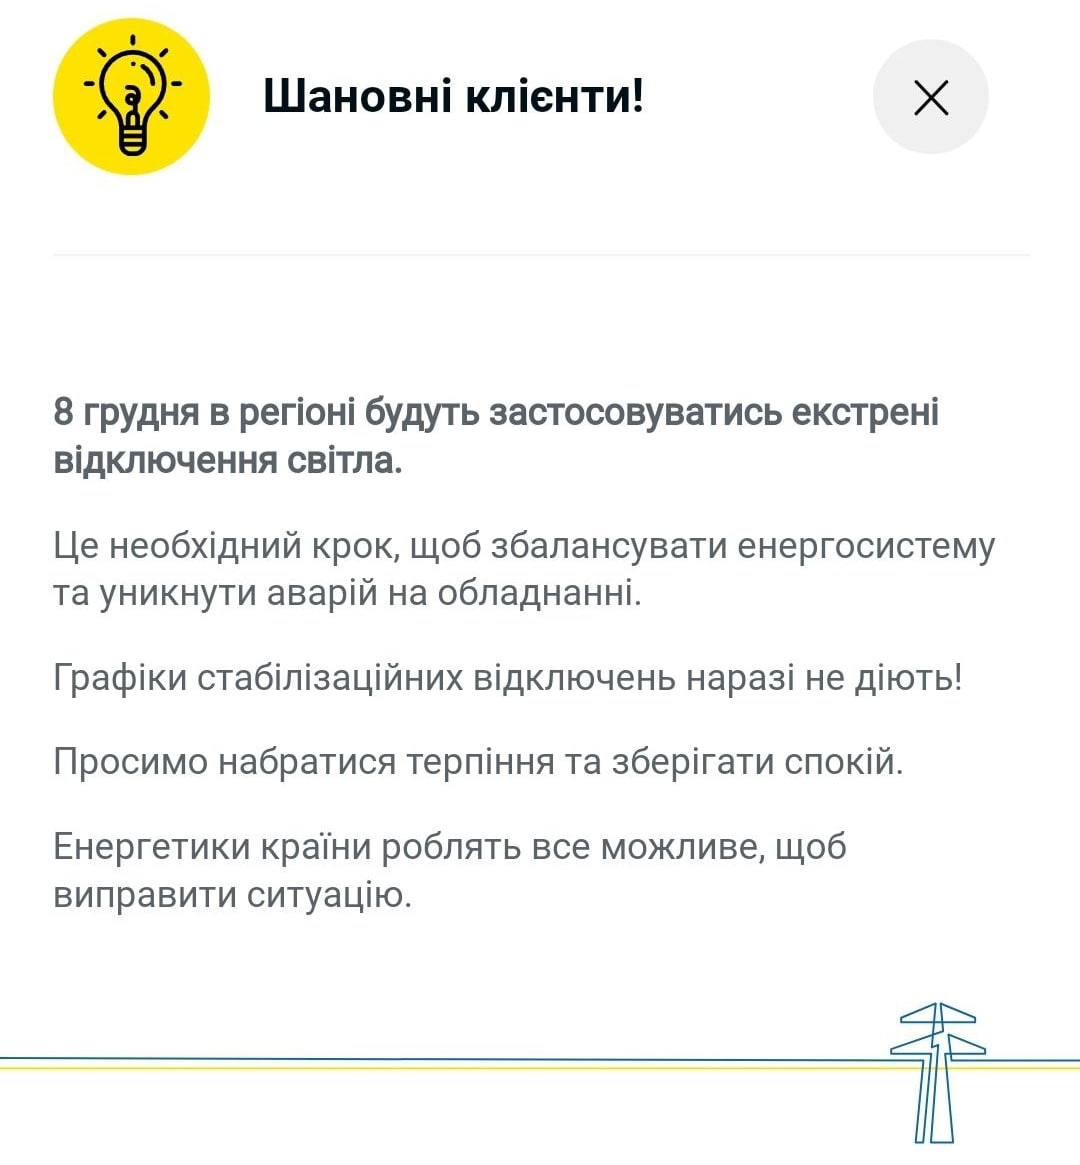 В Киеве, Одессе и Днепре с утра продолжаются экстренные отключения света, - сообщает ДТЭК